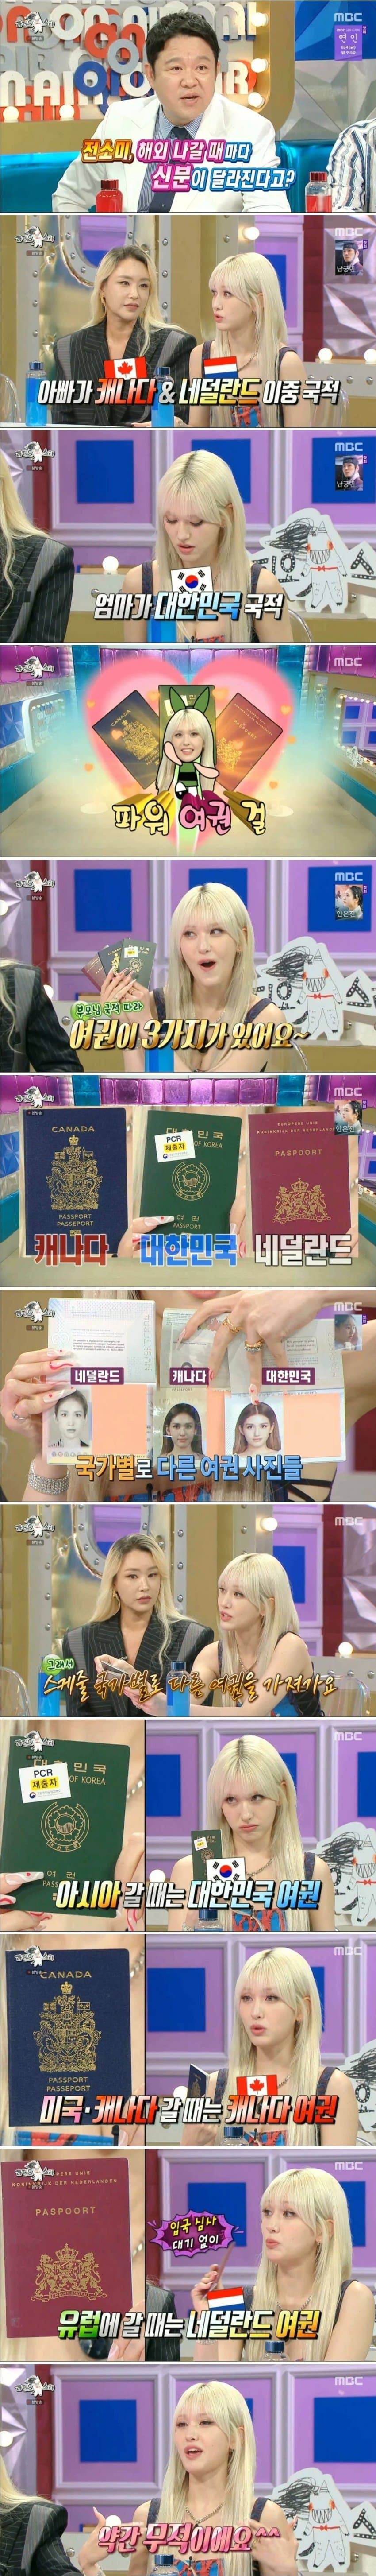 삼중국적 전소미의 여권 파워